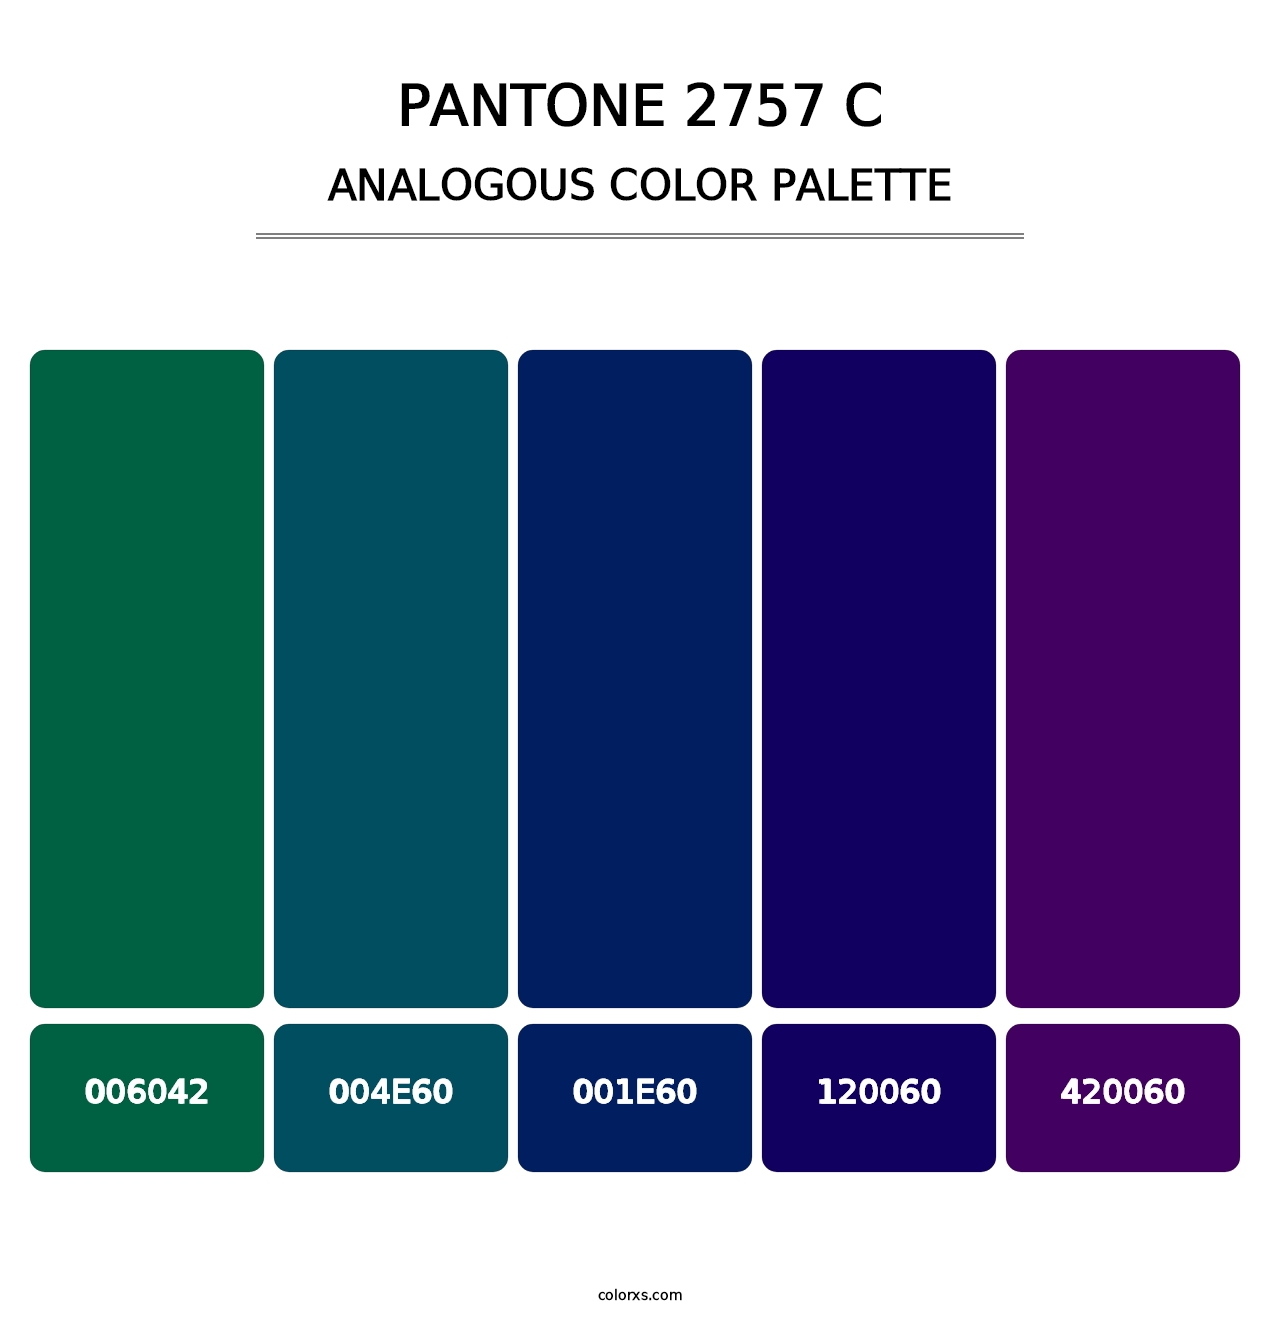 PANTONE 2757 C - Analogous Color Palette